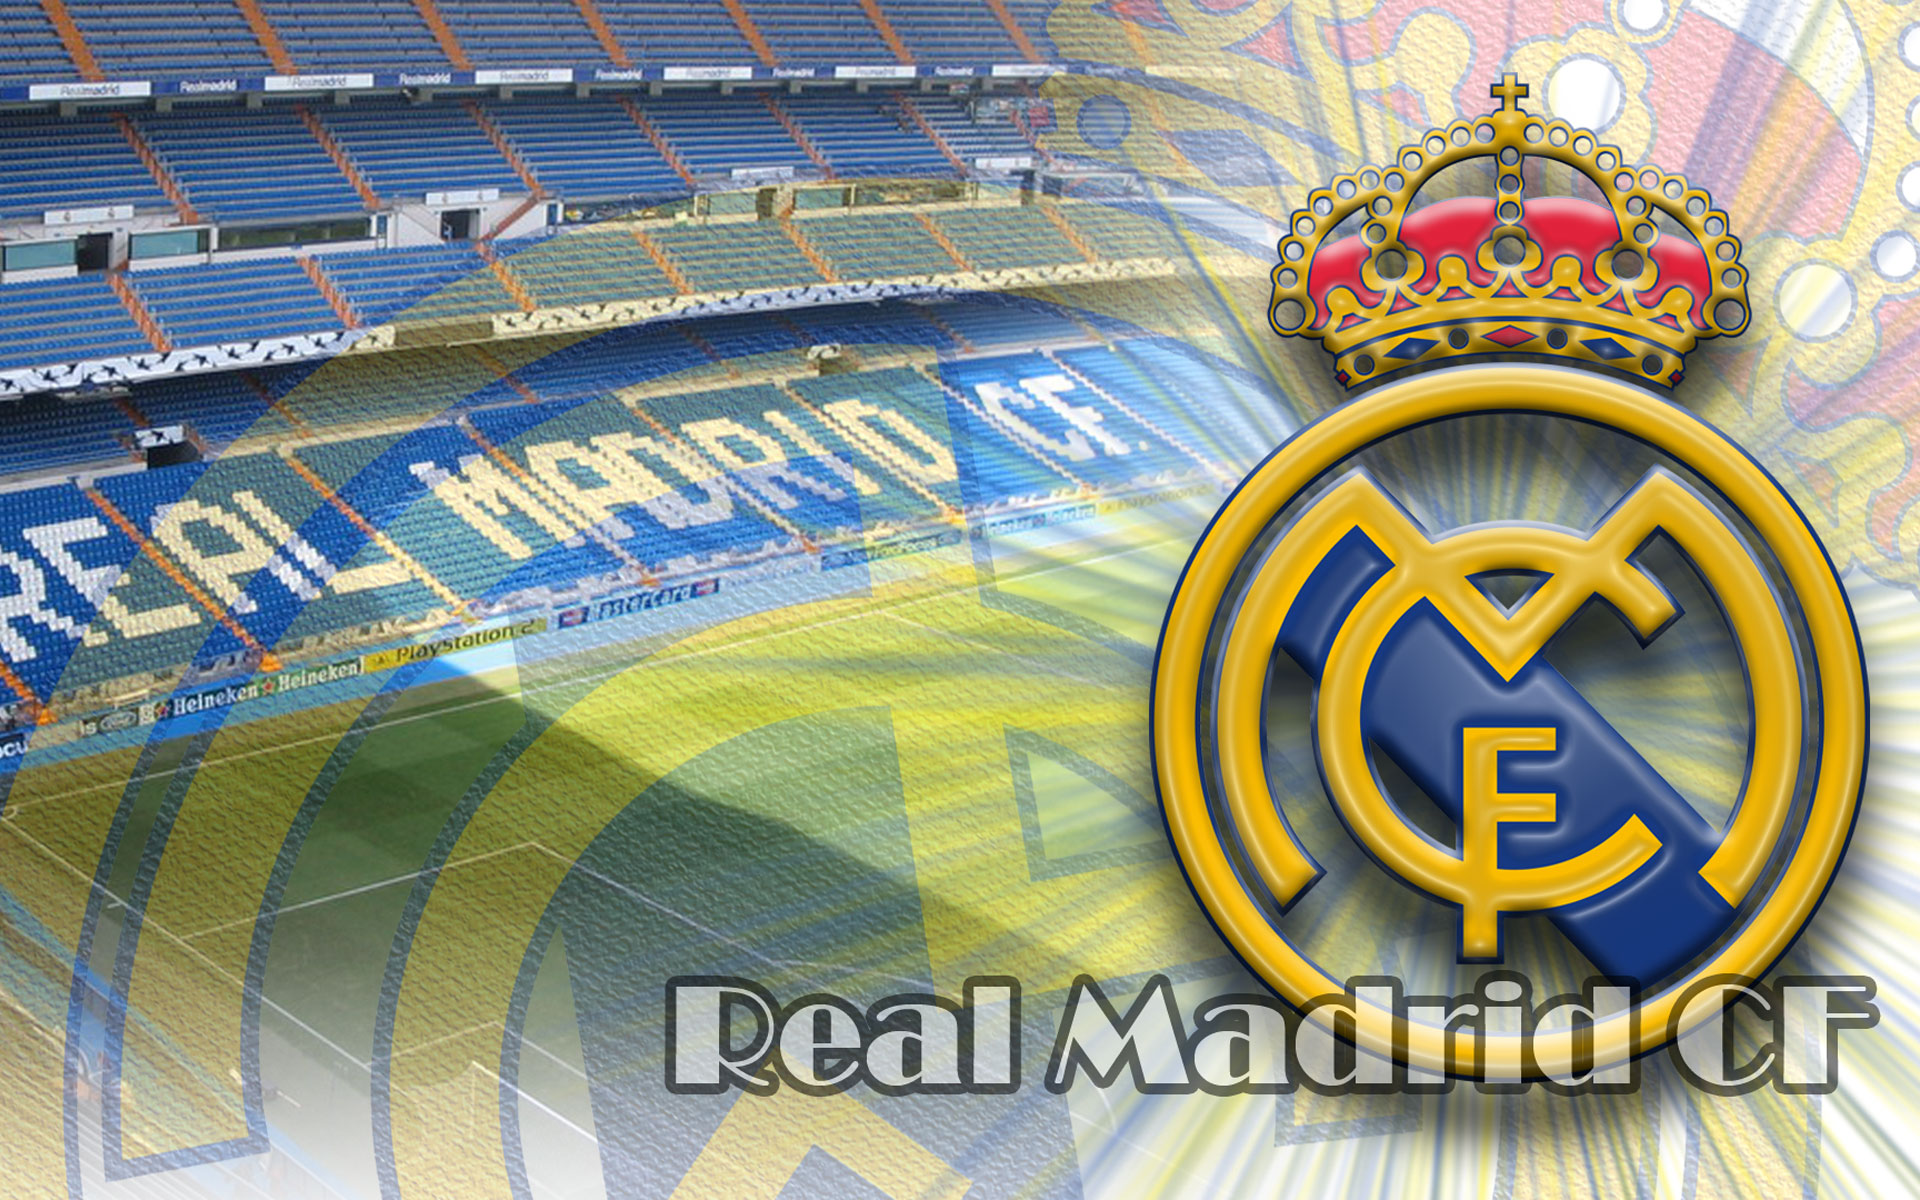 Real Madrid generează peste 500 de milioane de euro anual